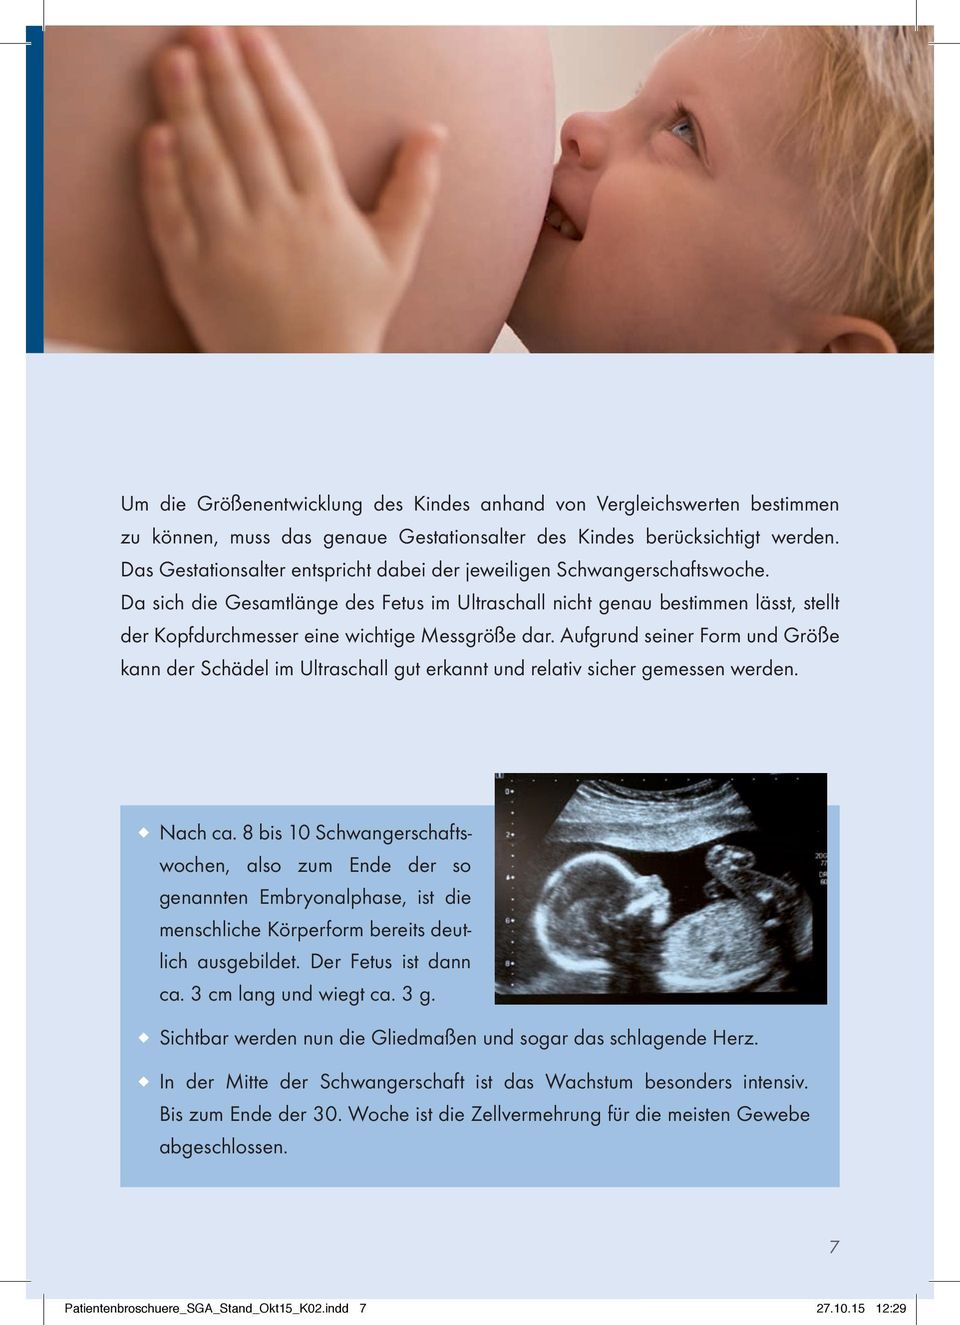 Da sich die Gesamtlänge des Fetus im Ultraschall nicht genau bestimmen lässt, stellt der Kopfdurchmesser eine wichtige Messgröße dar.